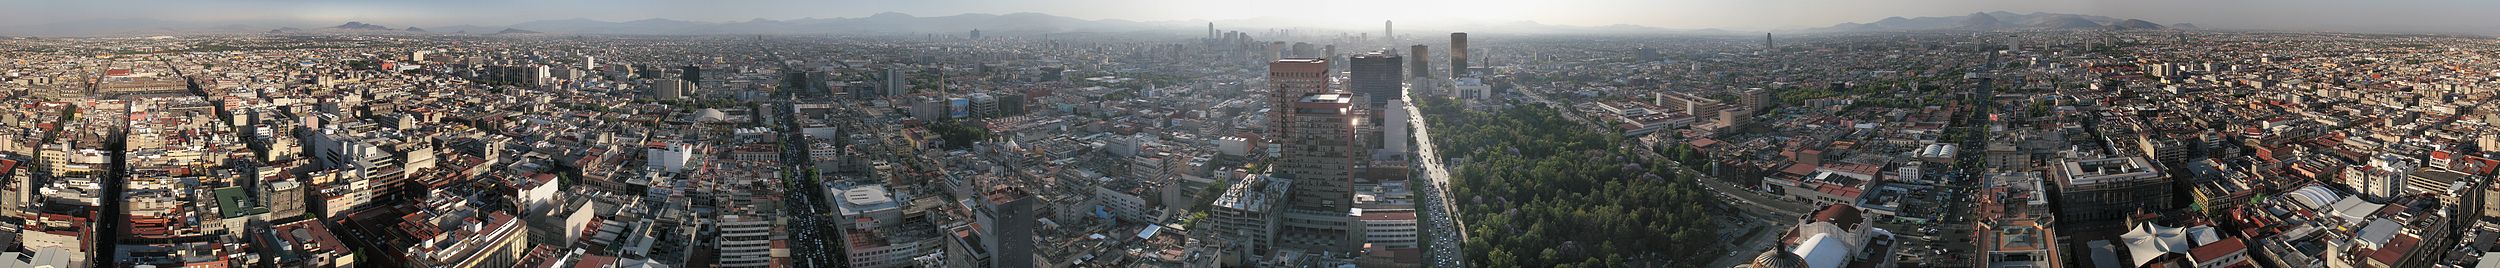 Vista panorámica de la Ciudad de México desde la Torre Latinoamericana. A la izquierda el Zócalo, en el centro la Torre Mayor, en primer plano la S.R.E y la Alameda.